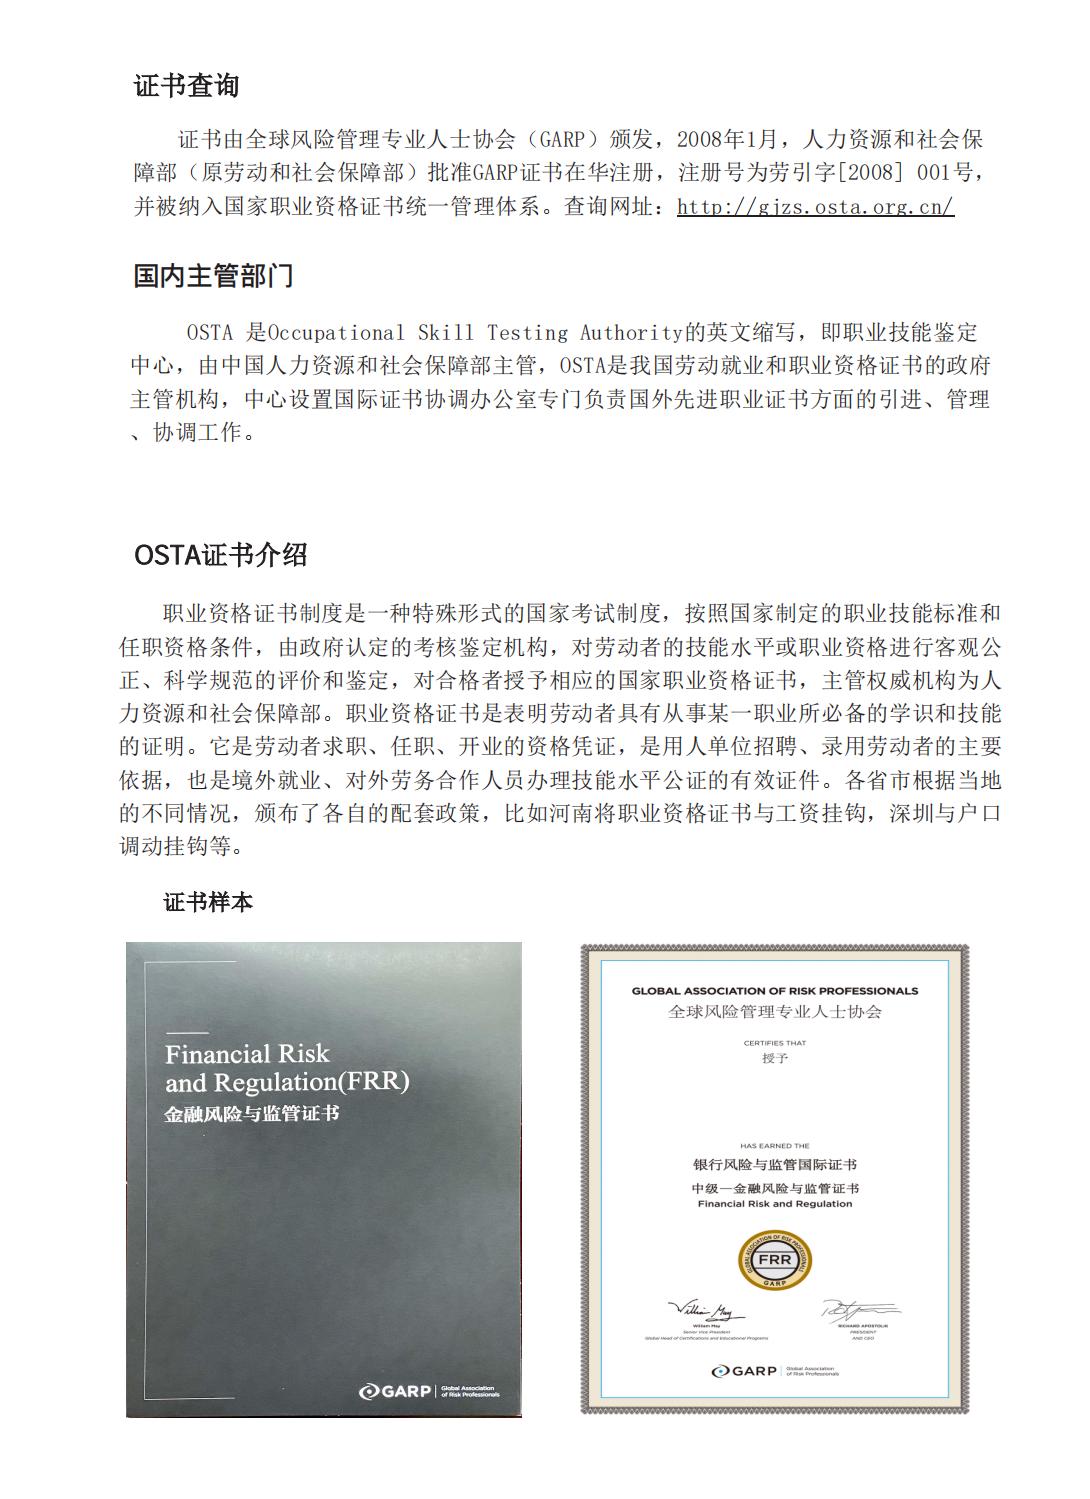 甘肃武威金融风险与监管证书FRR报名考试培训机构北京启信教育